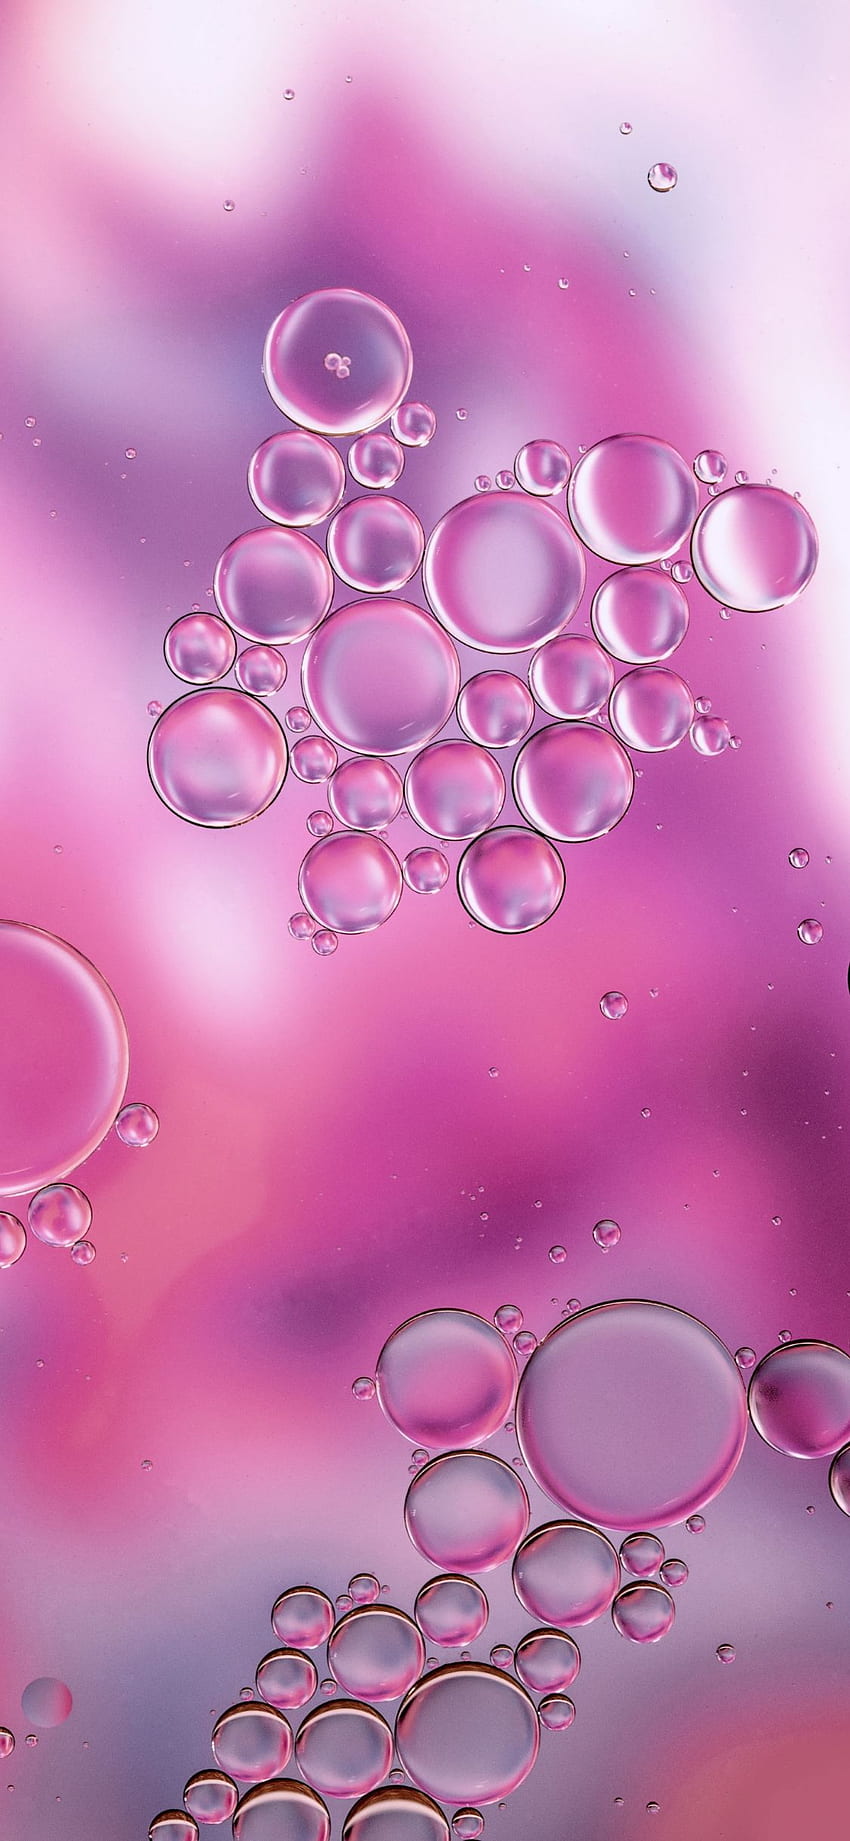 Bloob - Bubbles Pink -, Cat and Bubbles HD phone wallpaper